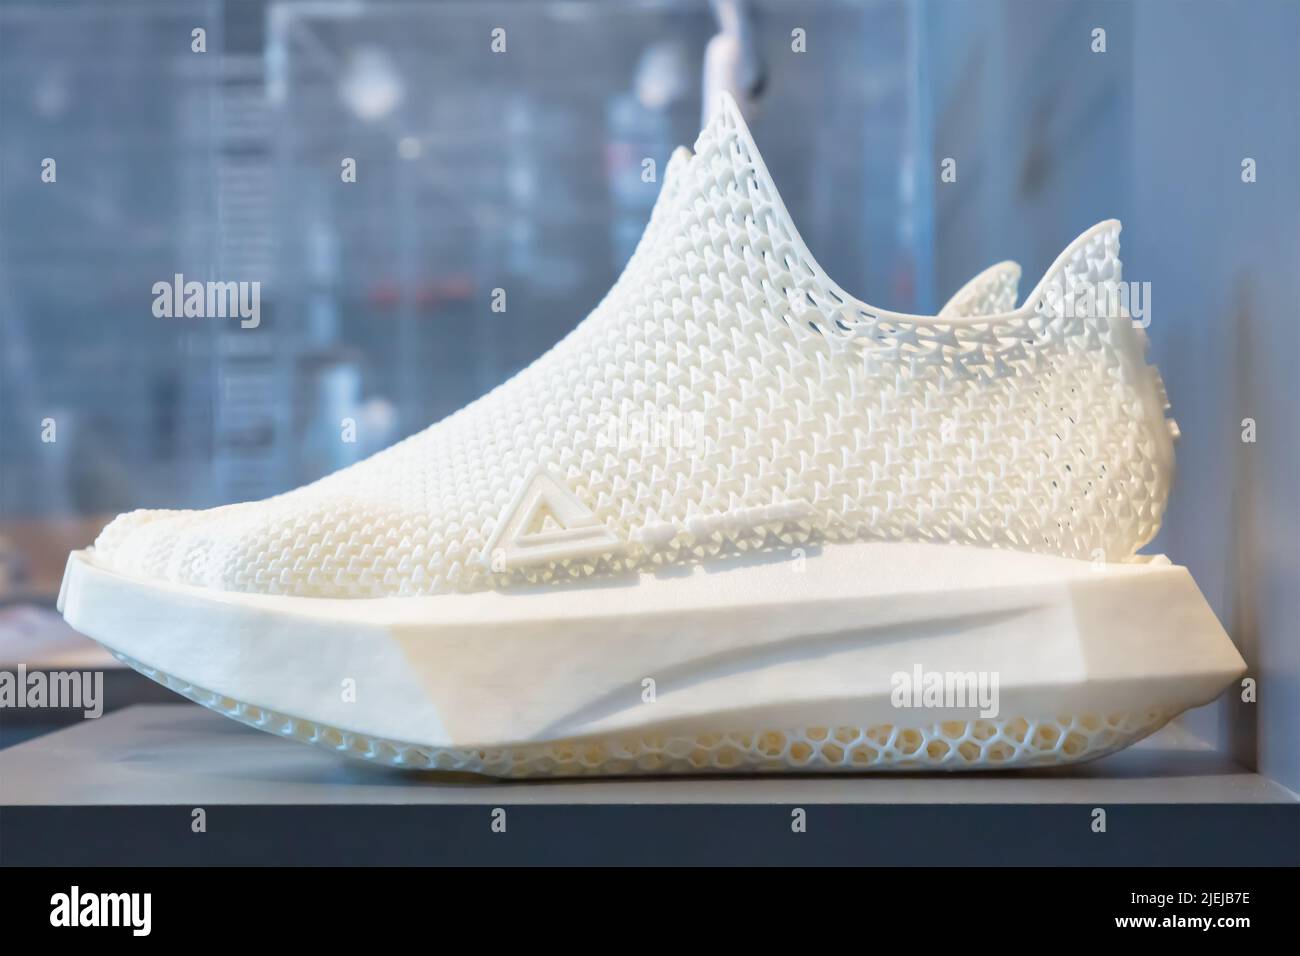 Essen, Allemagne - 21 juin 2022: Vue latérale d'une chaussure de course Peak 3D Sphere, entièrement imprimée en 3D et 100% recyclable à Essen, Allemagne Banque D'Images